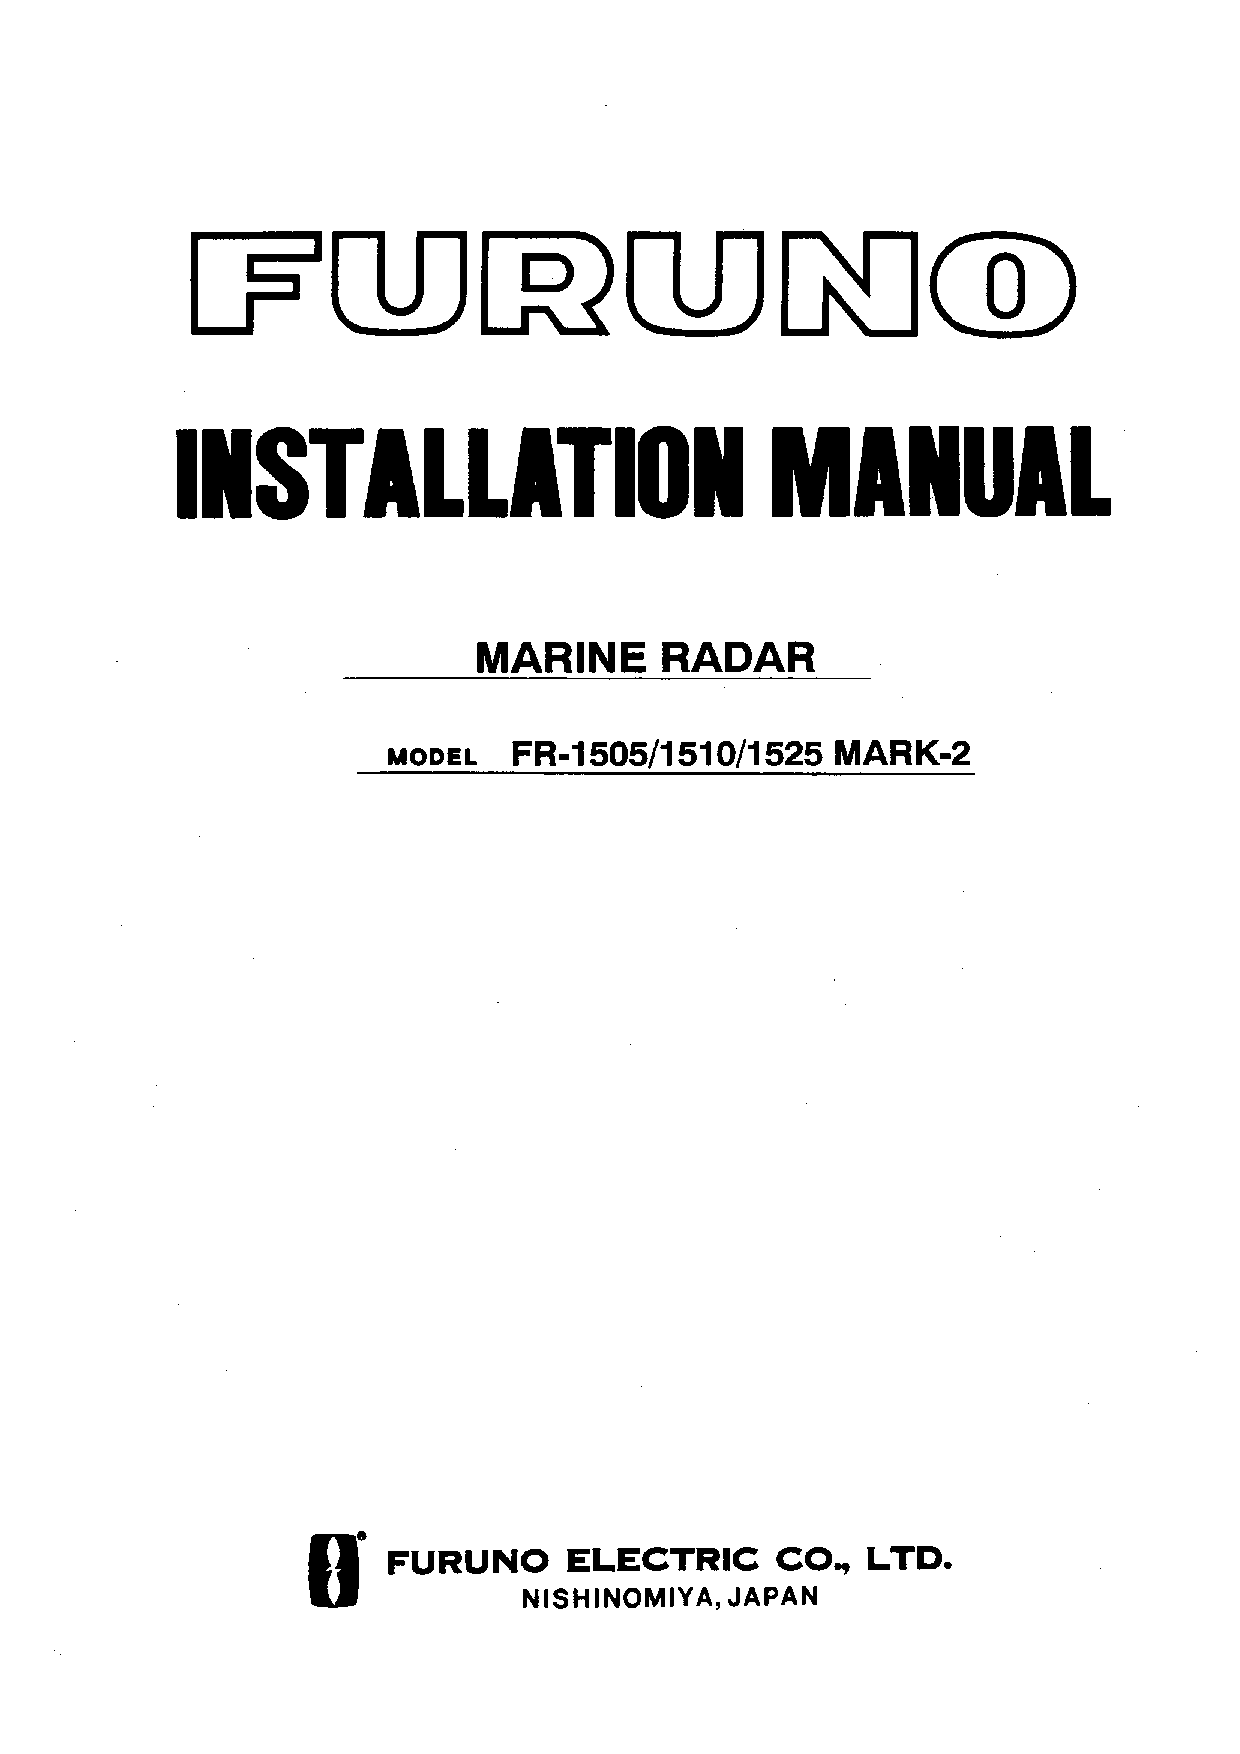 Furuno FR-1525, FR-1510, FR-1505 User Manual